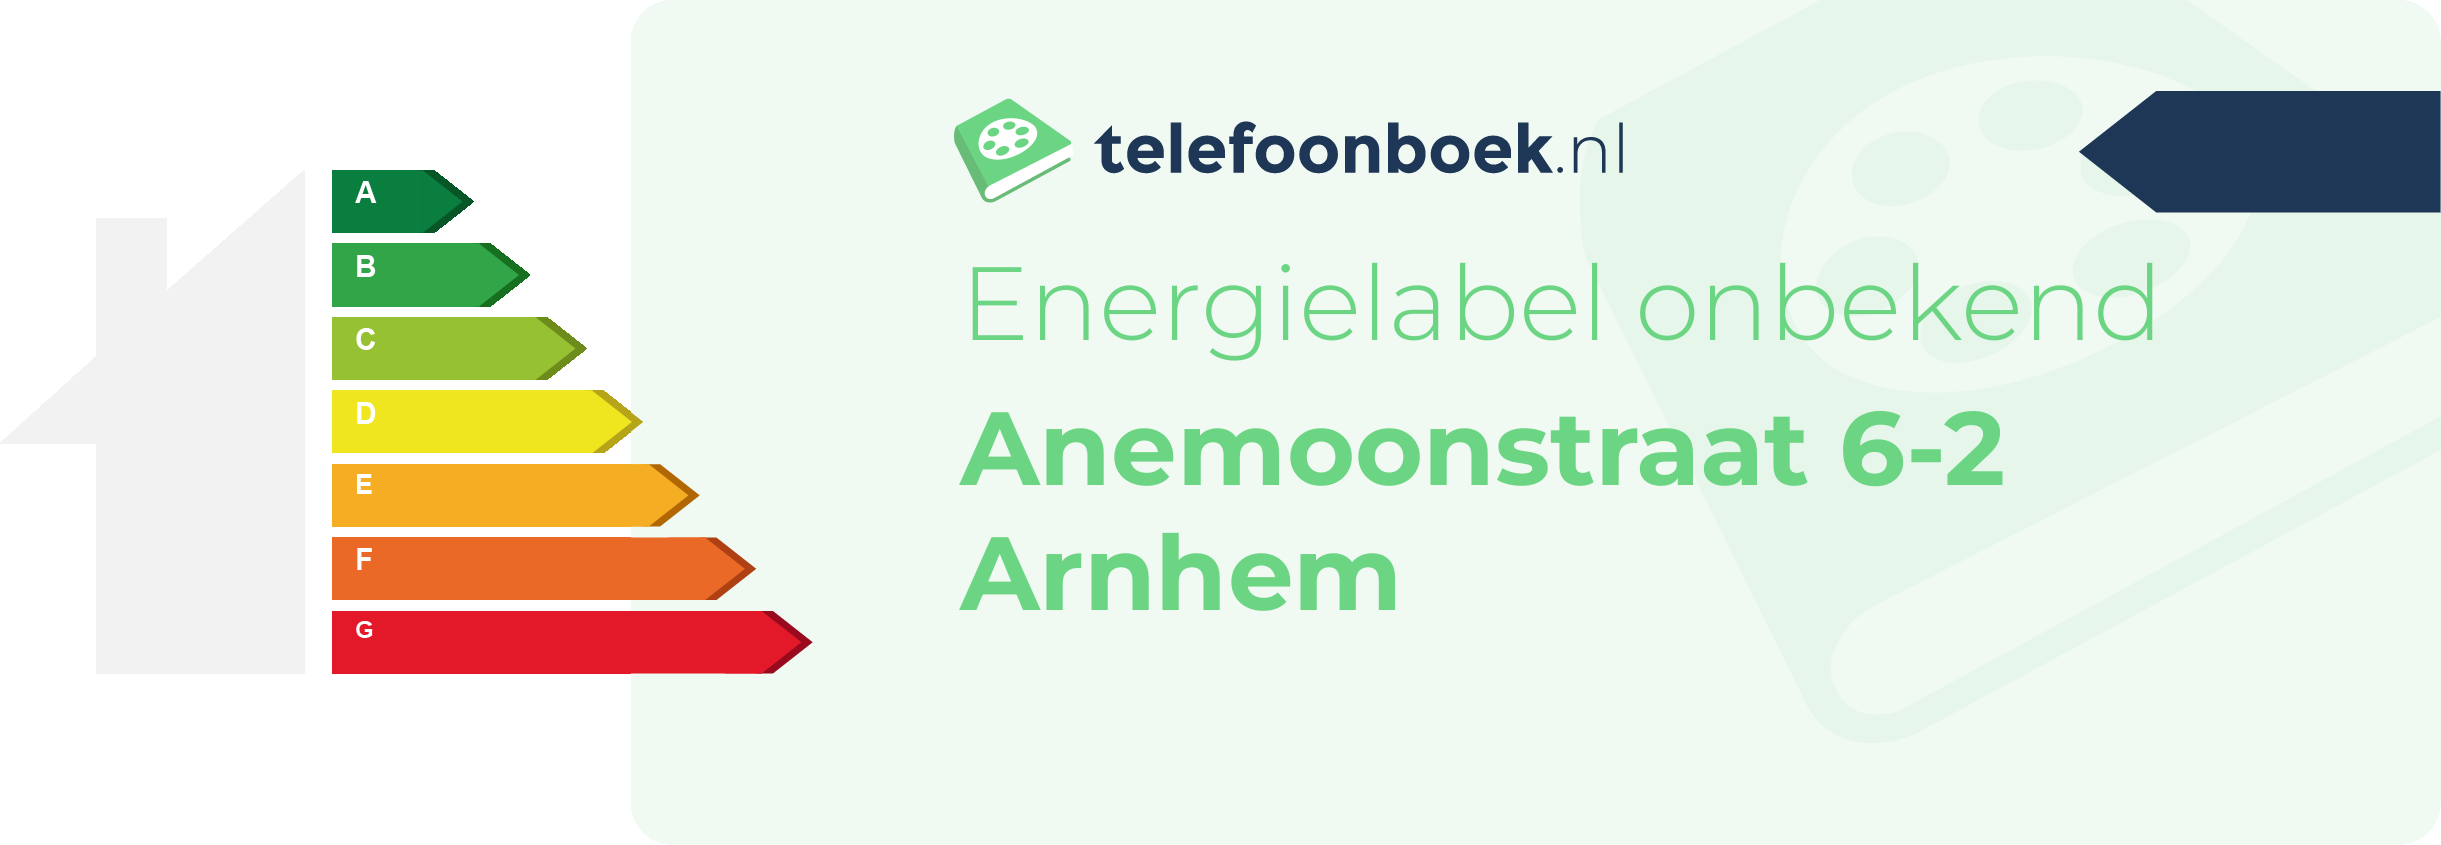 Energielabel Anemoonstraat 6-2 Arnhem